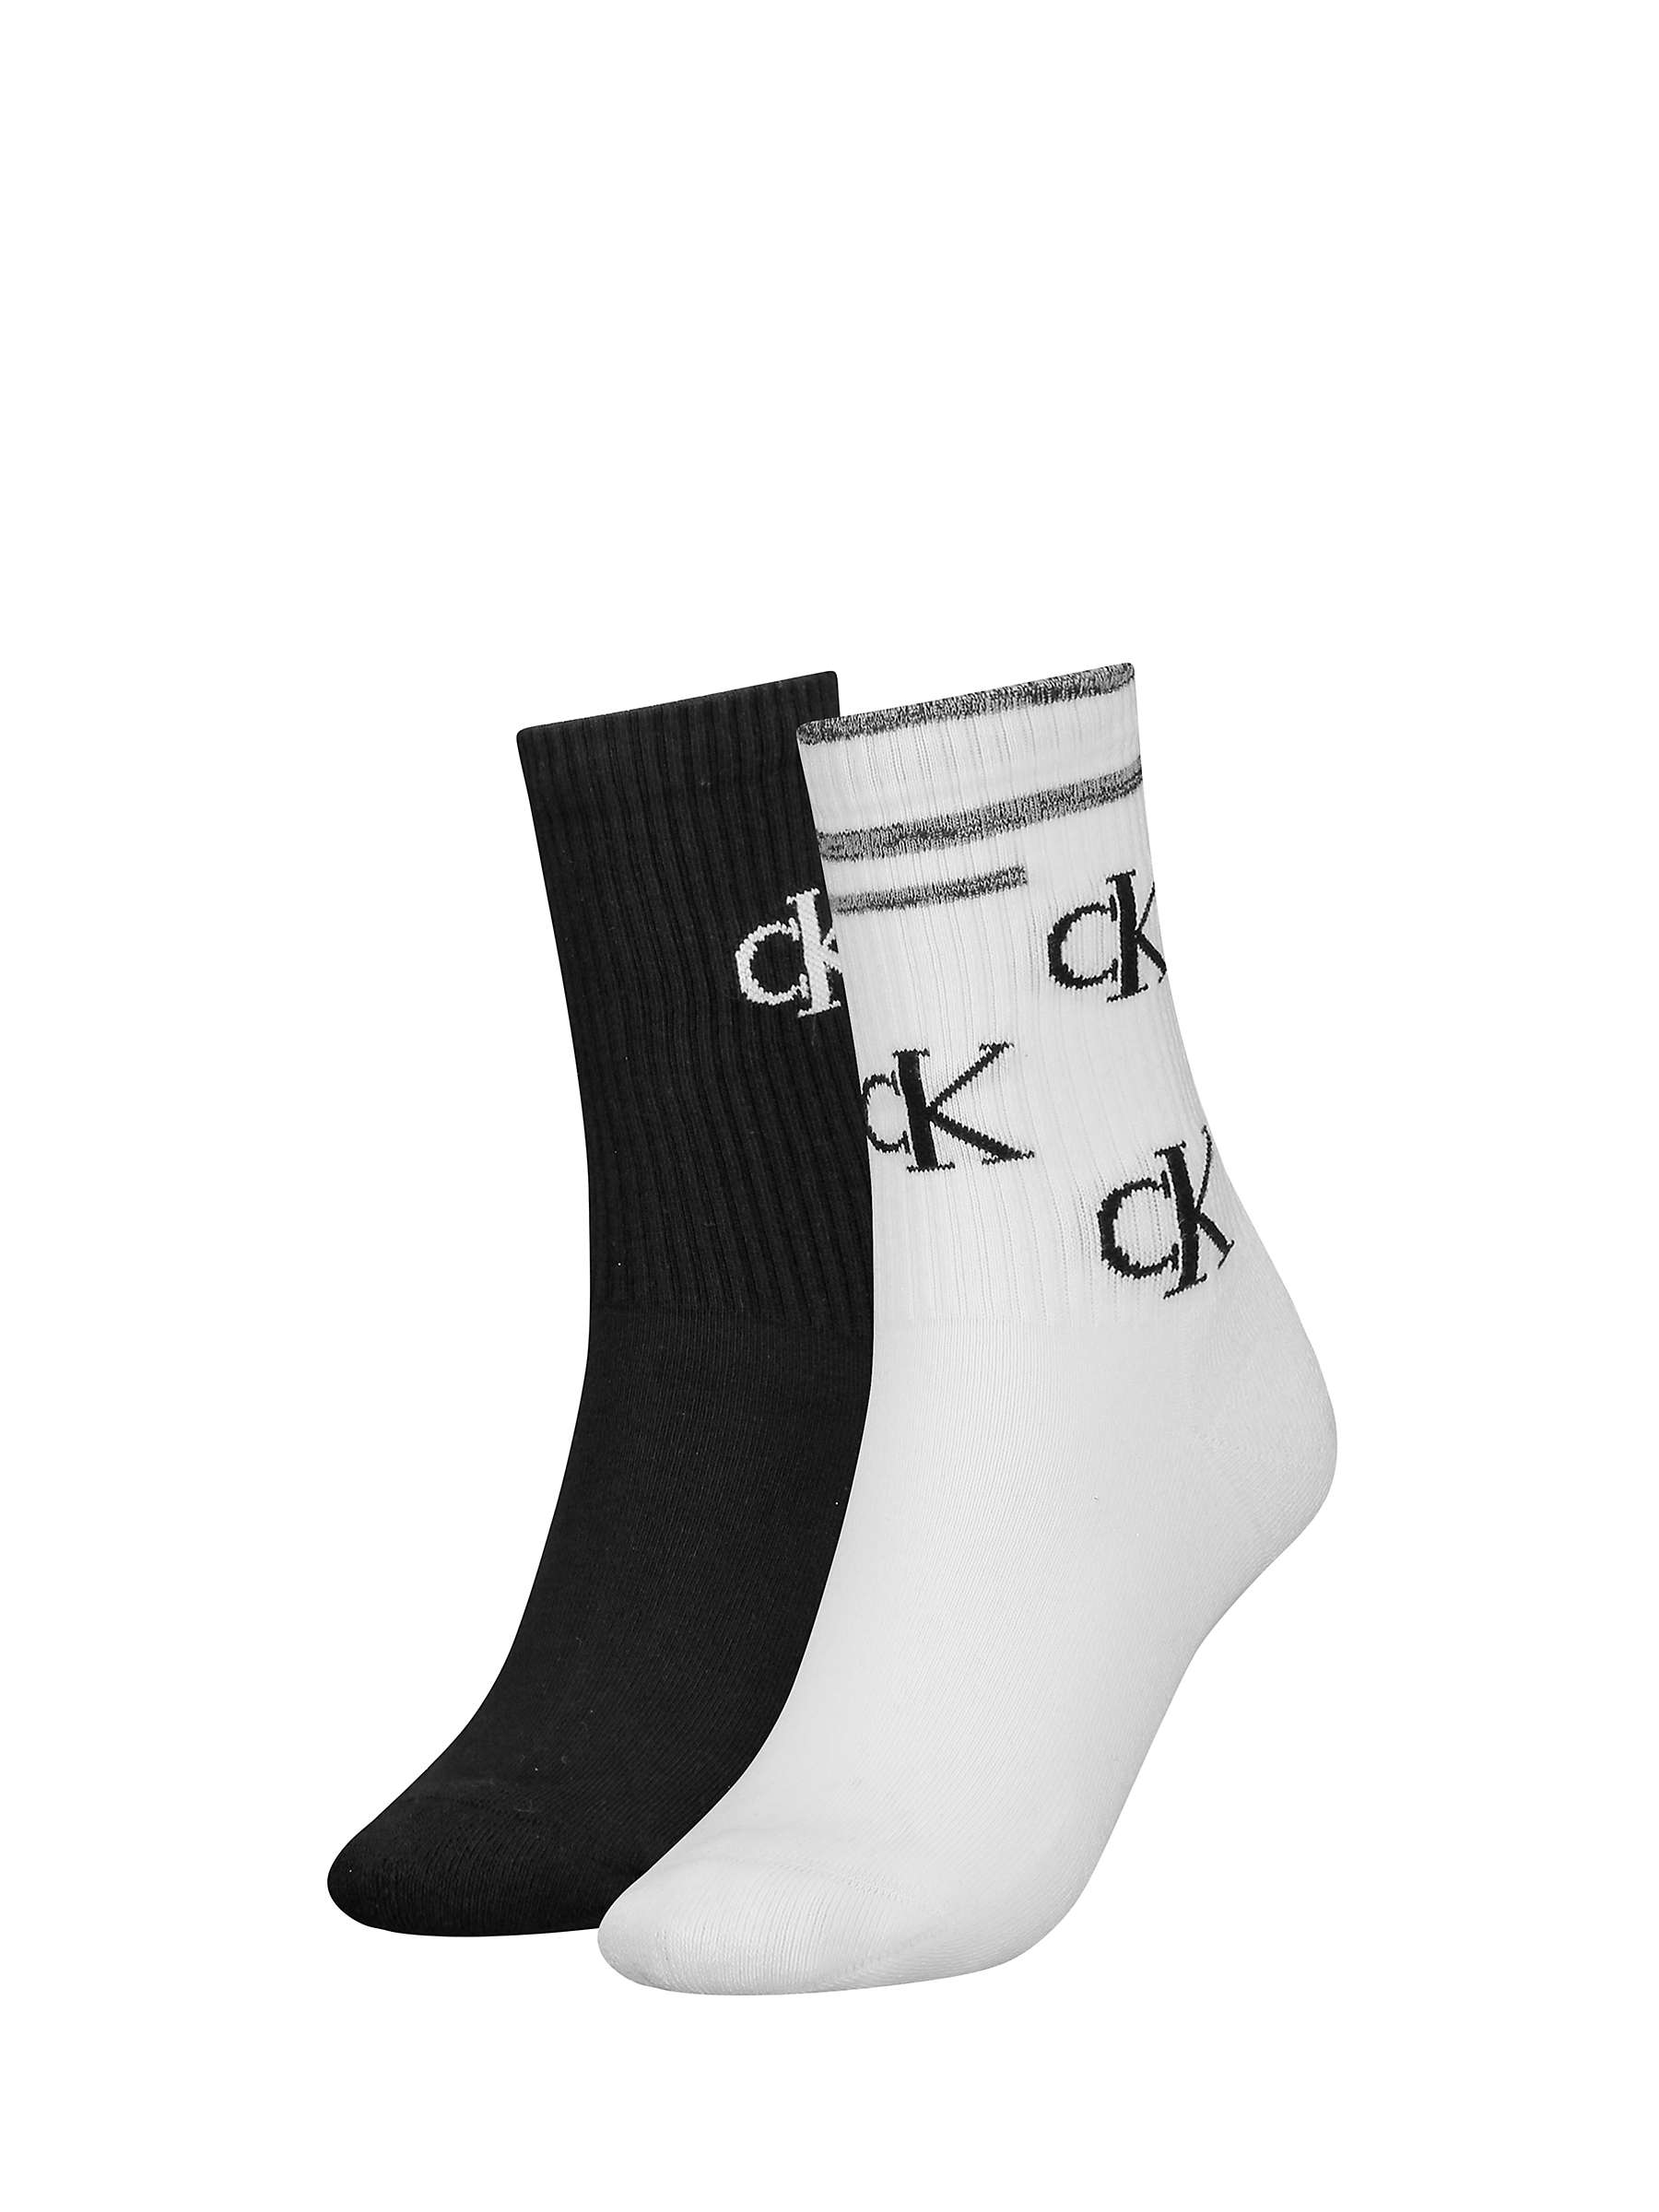 Buy Calvin Klein Scattered Logo Ankle Socks, 2 Pack, White/Black Online at johnlewis.com